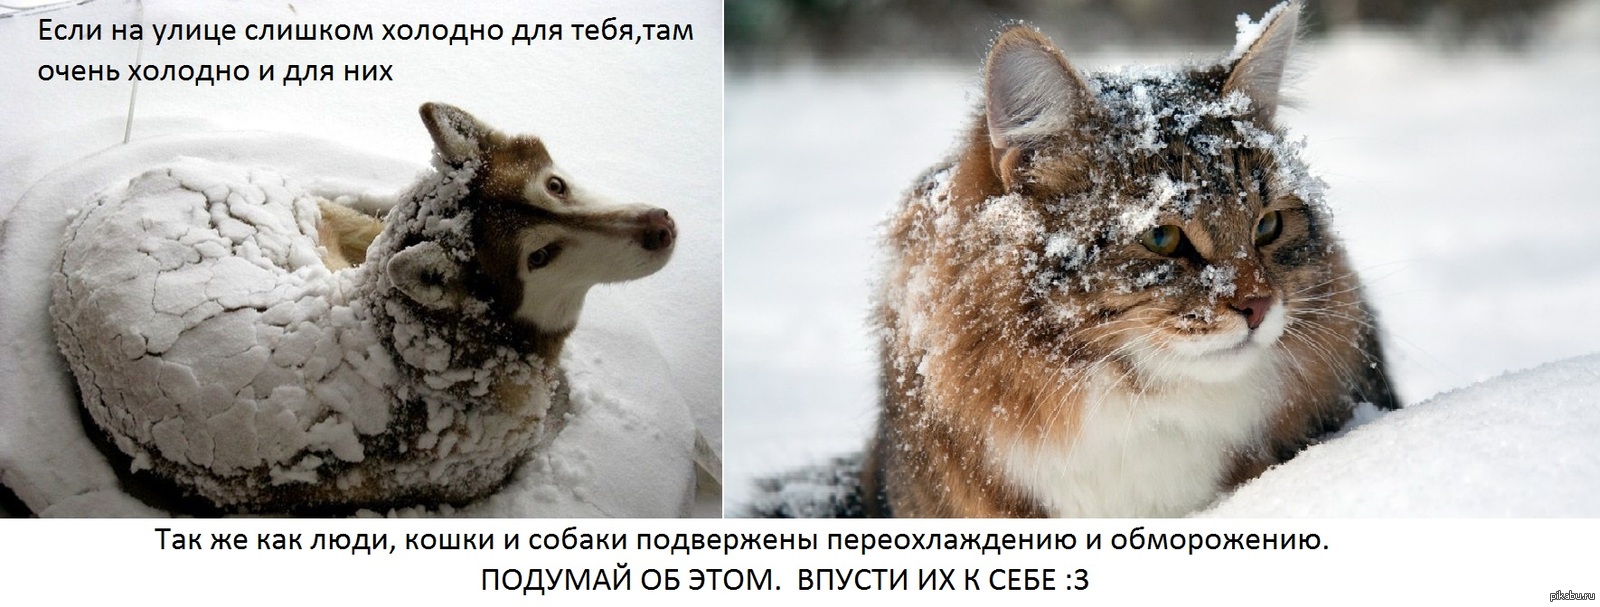 Холодно и не красива. Бездомные животные зима. Замерзающие бездомные животные. Помогайте бездомным животным в Морозы. Бездомные животные мерзнут.